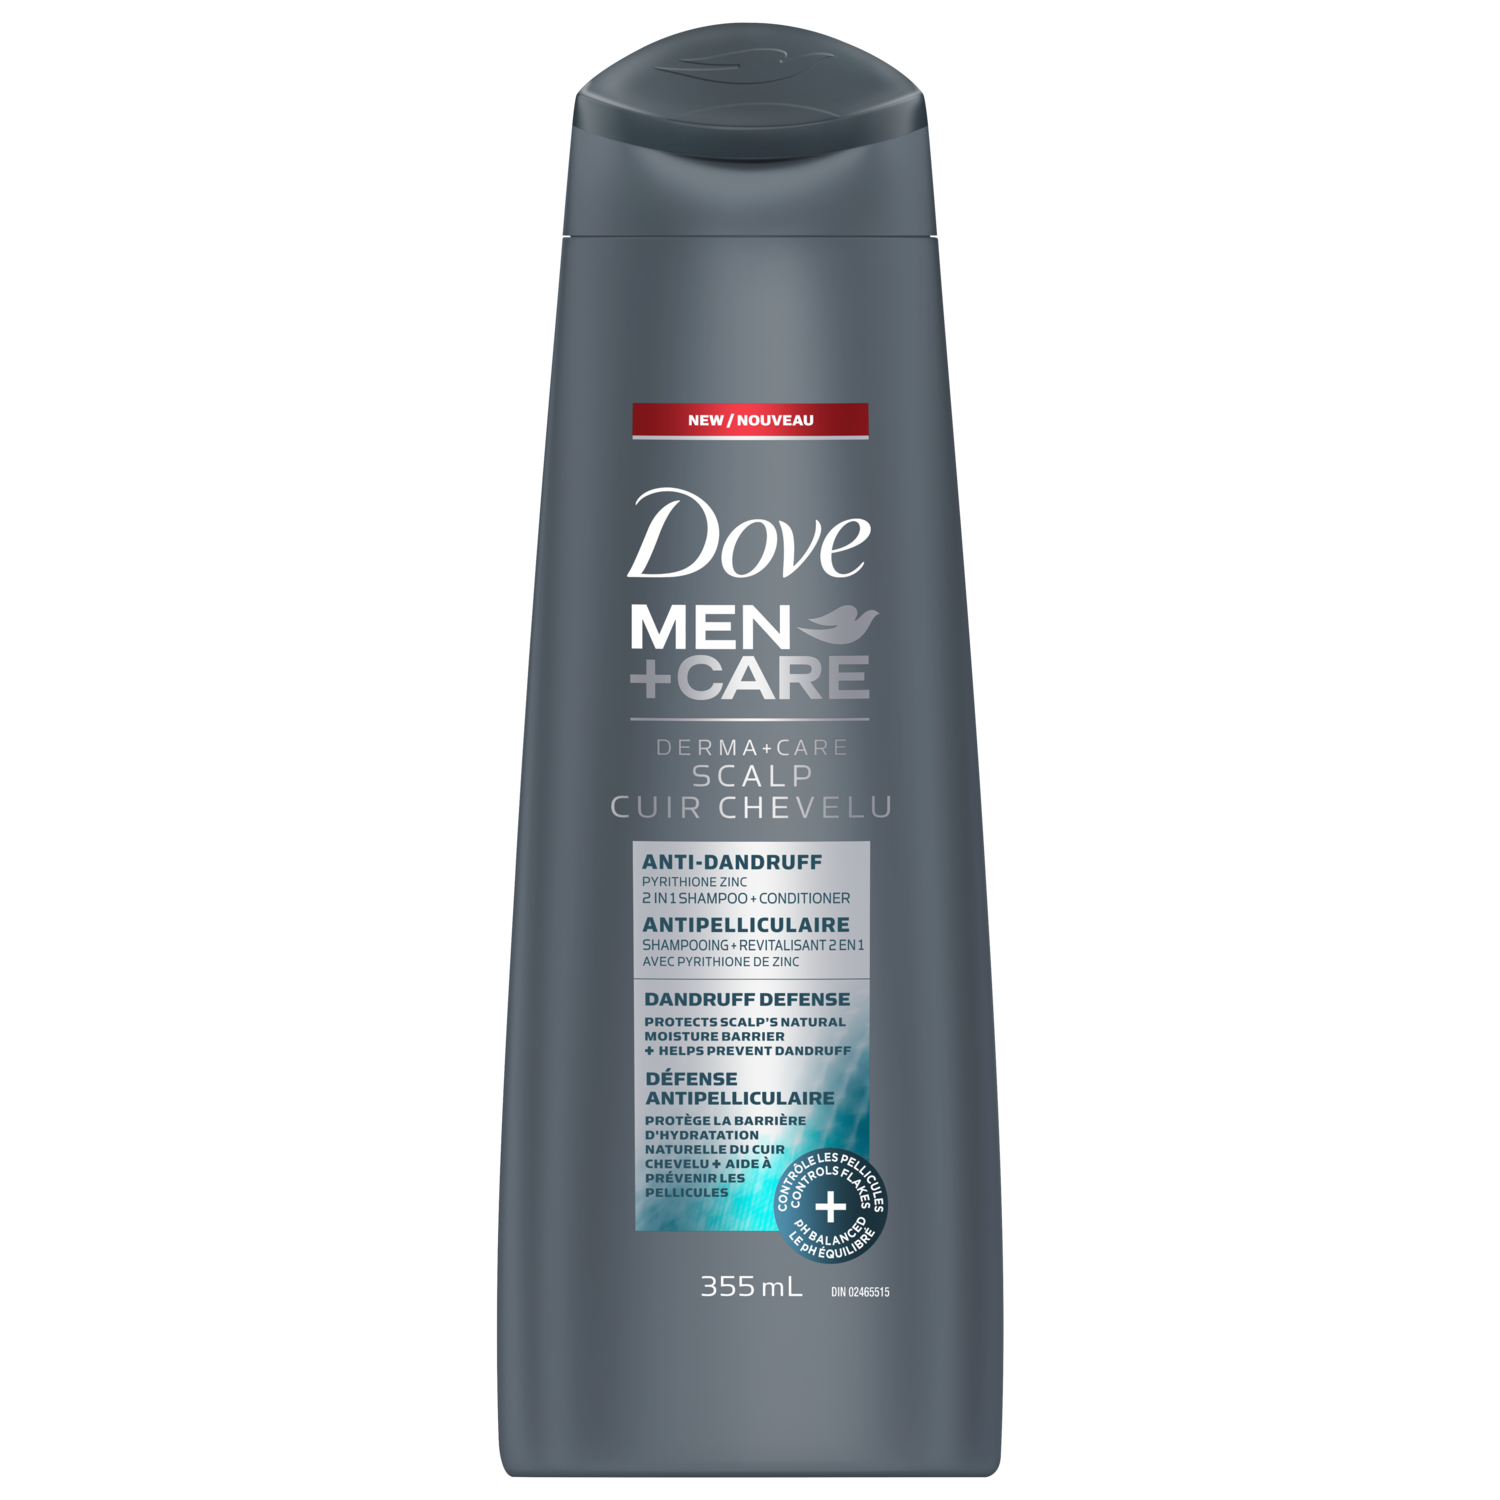 (Dove Men+Care) | Anti-Dandruff Shampoo & Conditioner.